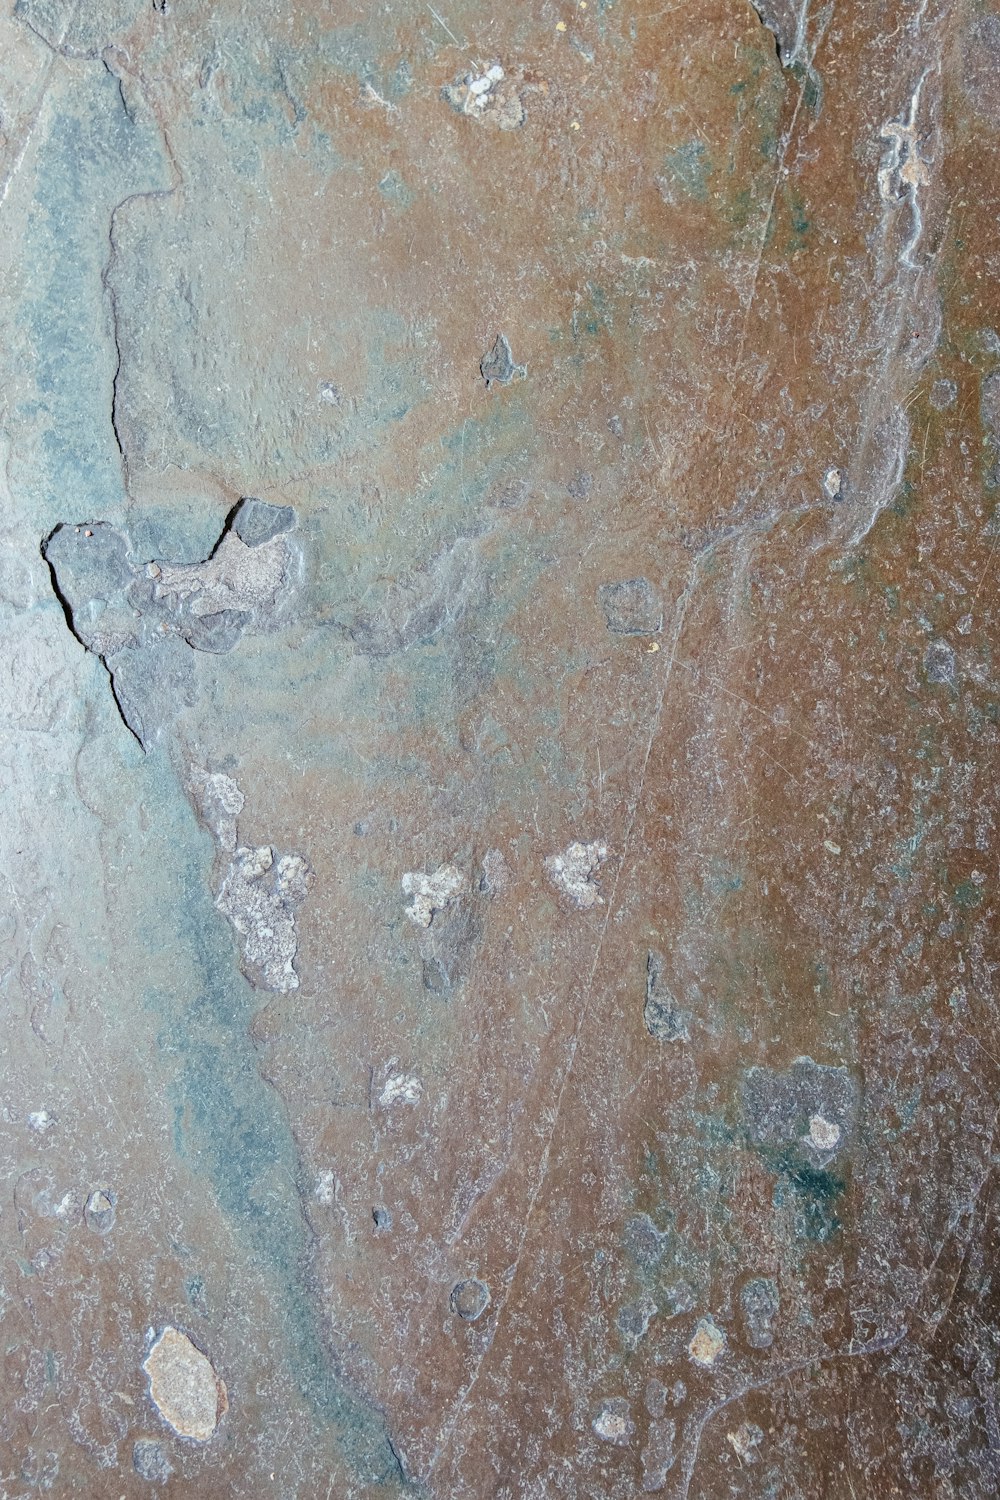 um close up de um pedaço de rocha no chão